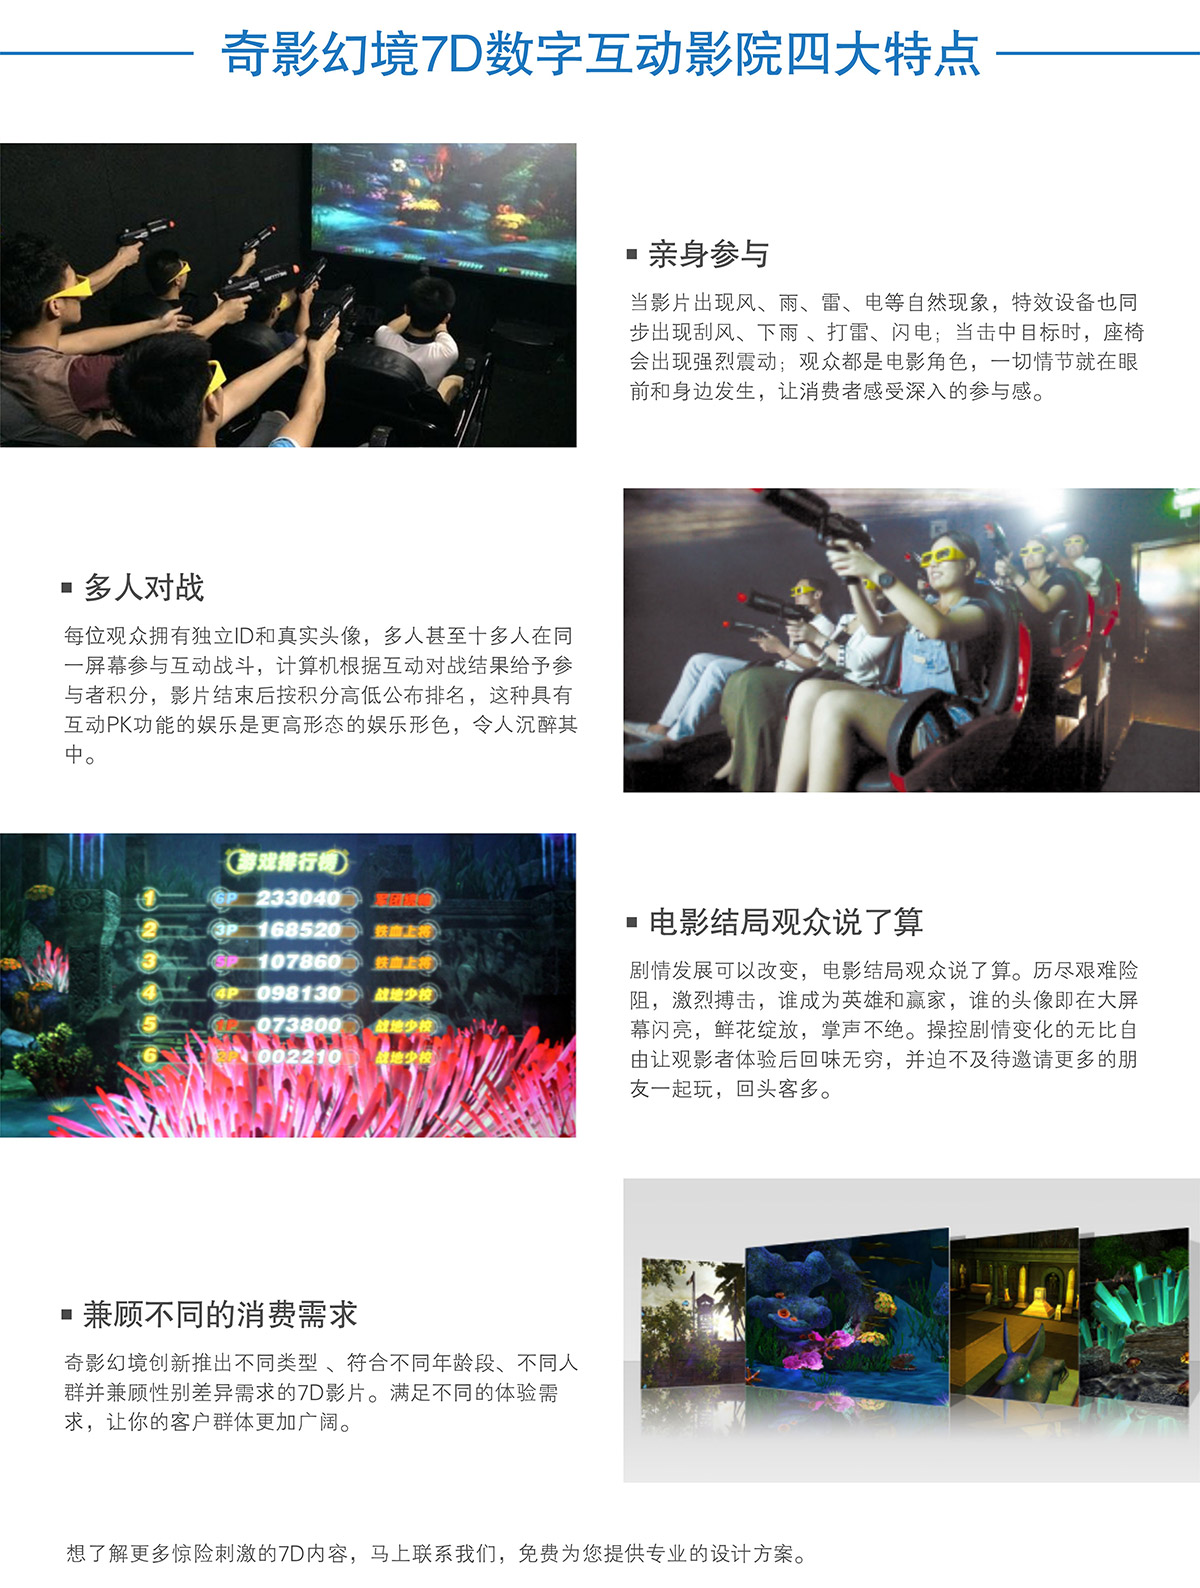 广东省广州奇影幻境7D数字互动影院四大特点.jpg